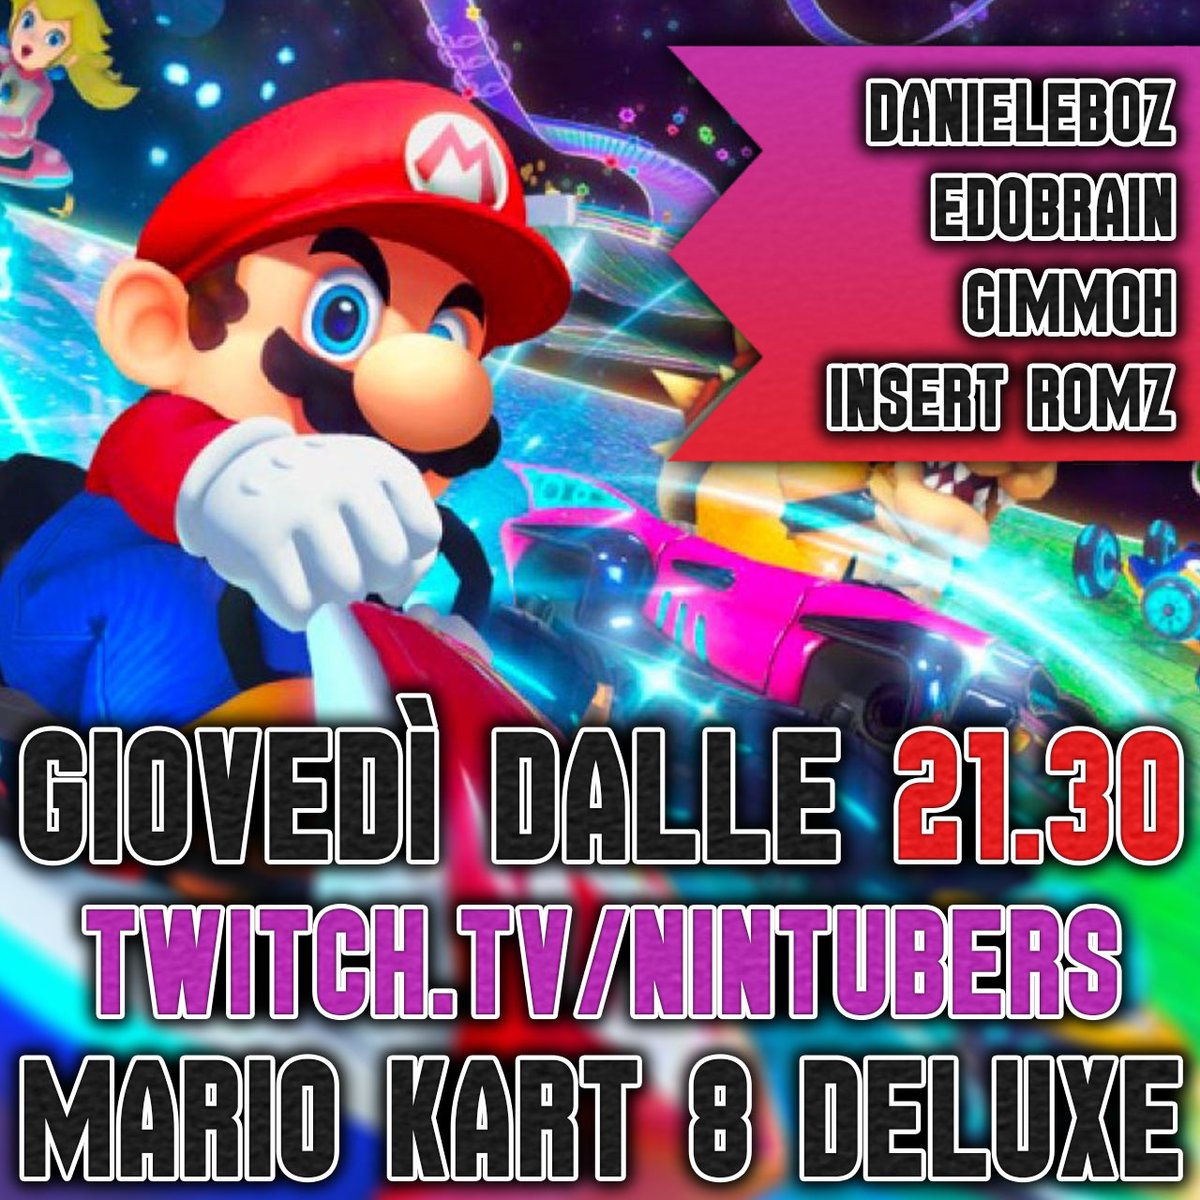 Giovedì (oggi) dalle 21.30 saremo in #live sul nostro canale #Twitch per giocare a '#MarioKart8Deluxe'. Ci saranno @DanieleBoz, Edobrain, @Gimmoh4 e Insert RoMZ. Non mancate!
twitch.tv/nintubers